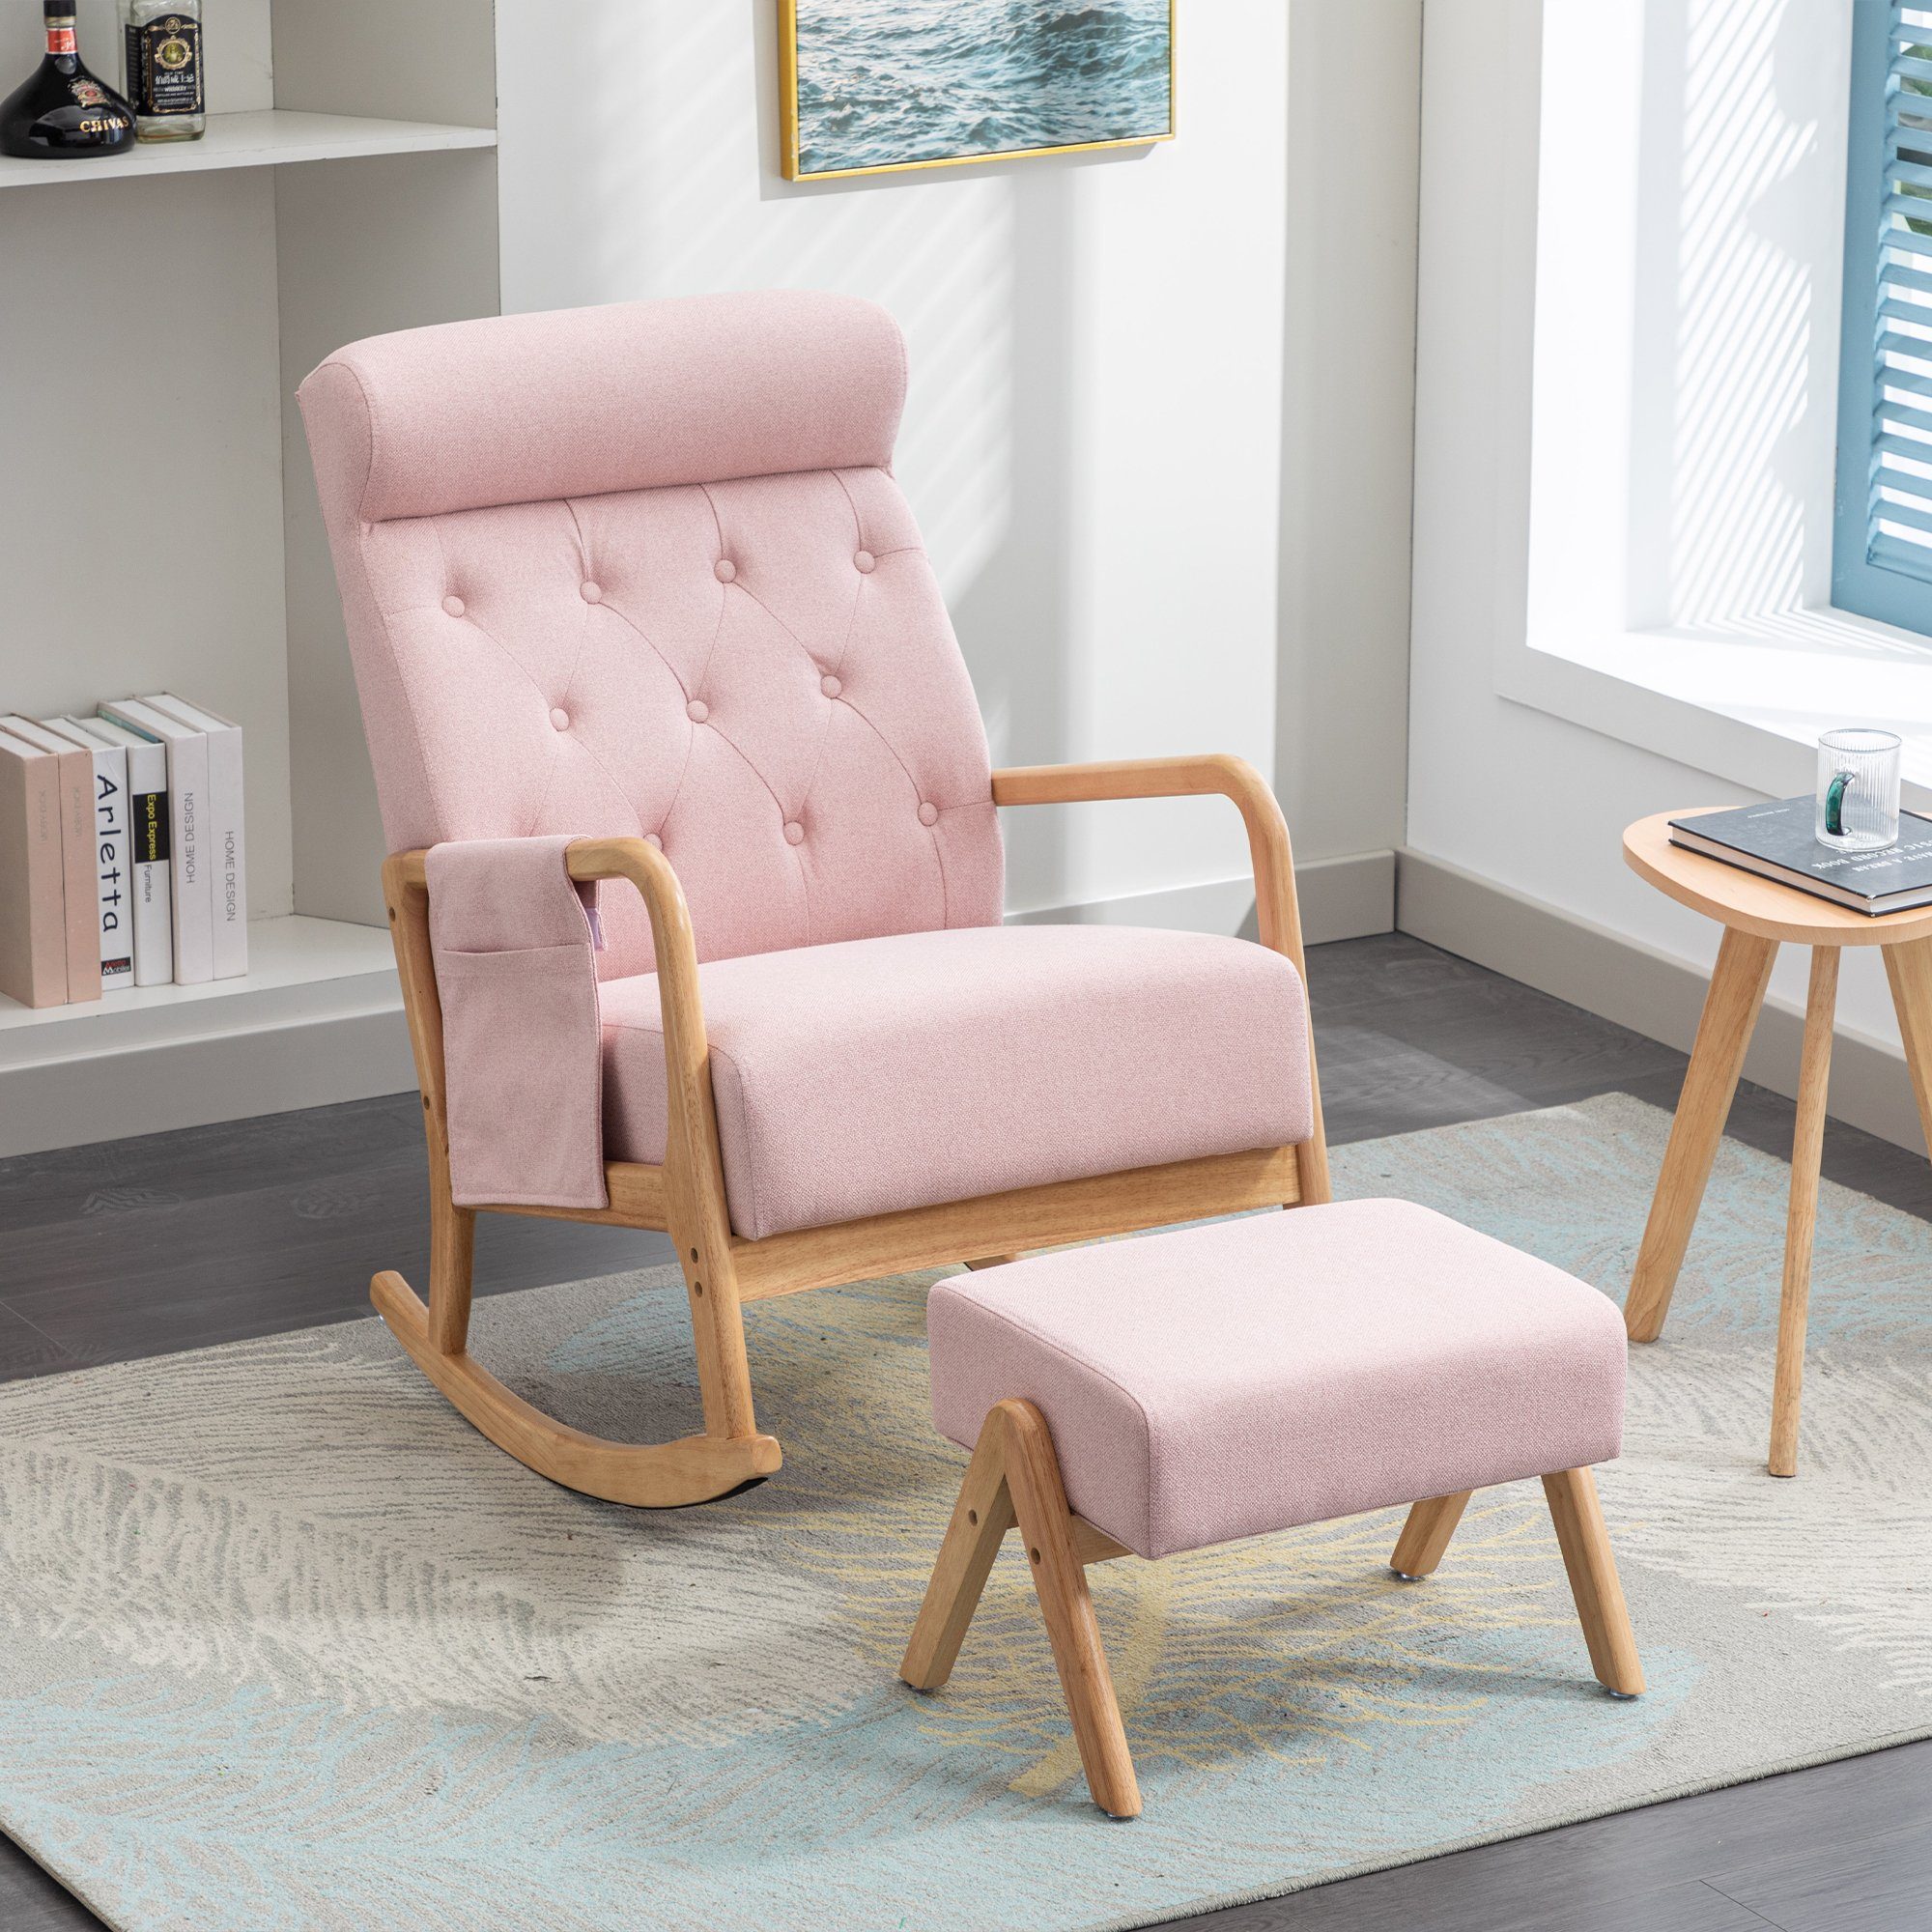 OKWISH Relaxsessel Schaukelsessel, Relaxstuhl, Schaukelstuhl (Leinen, Mit Seitentaschen, mit Hocker), Kissen und Rückenlehne integriertes Design rosa | Sessel